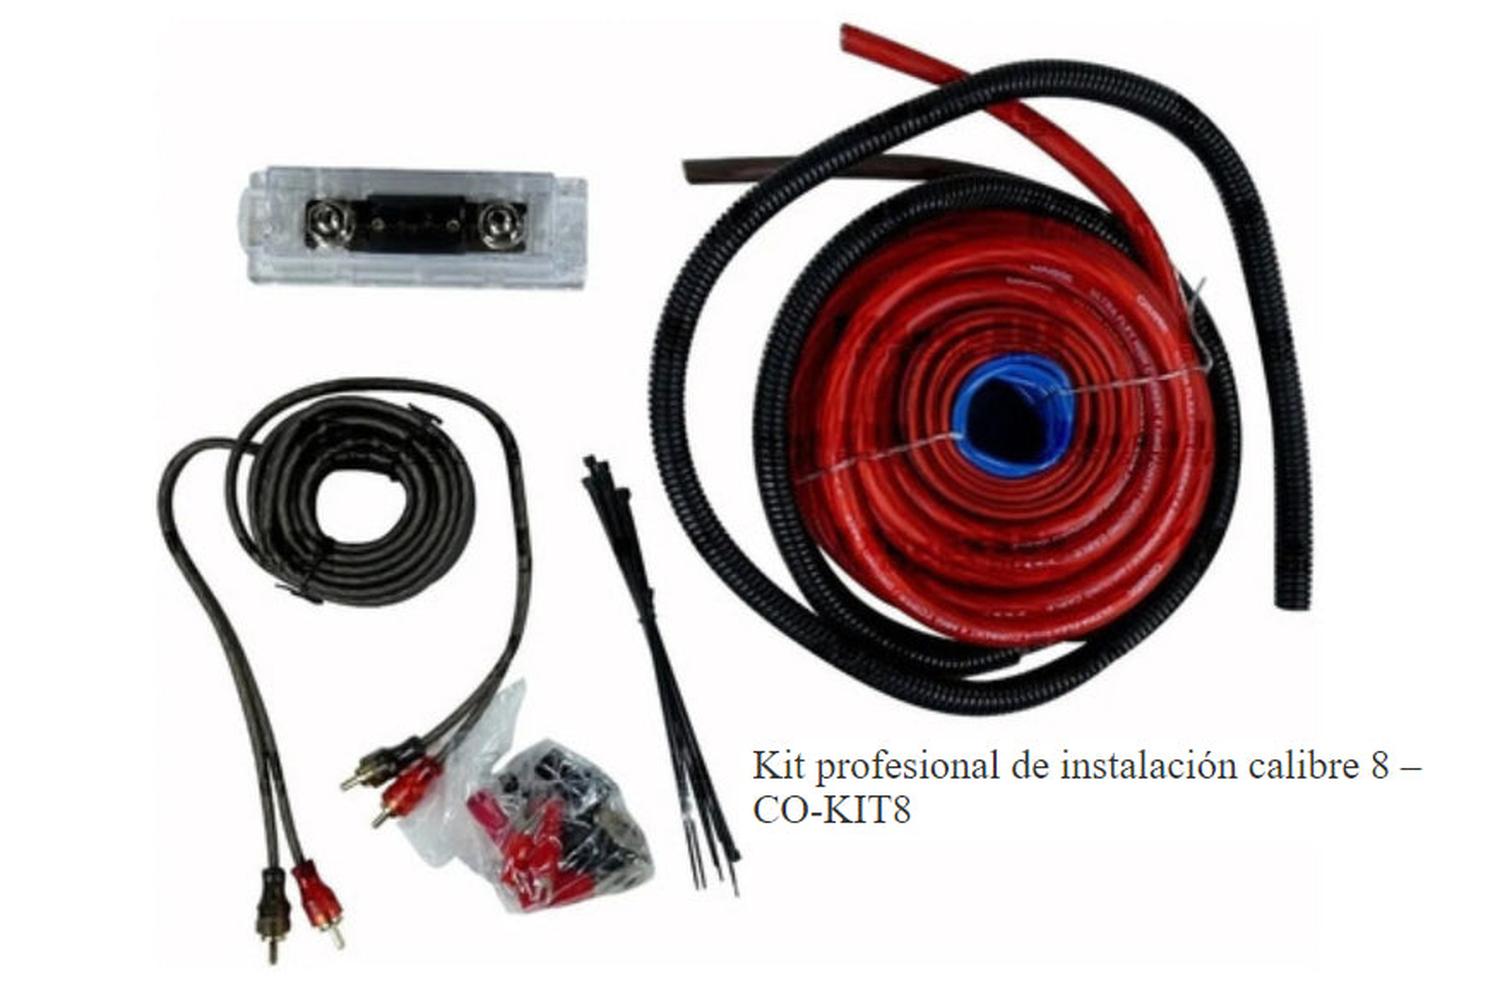 Kit de Cableado para Instalación de Amplificador Coustic CO-KIT8